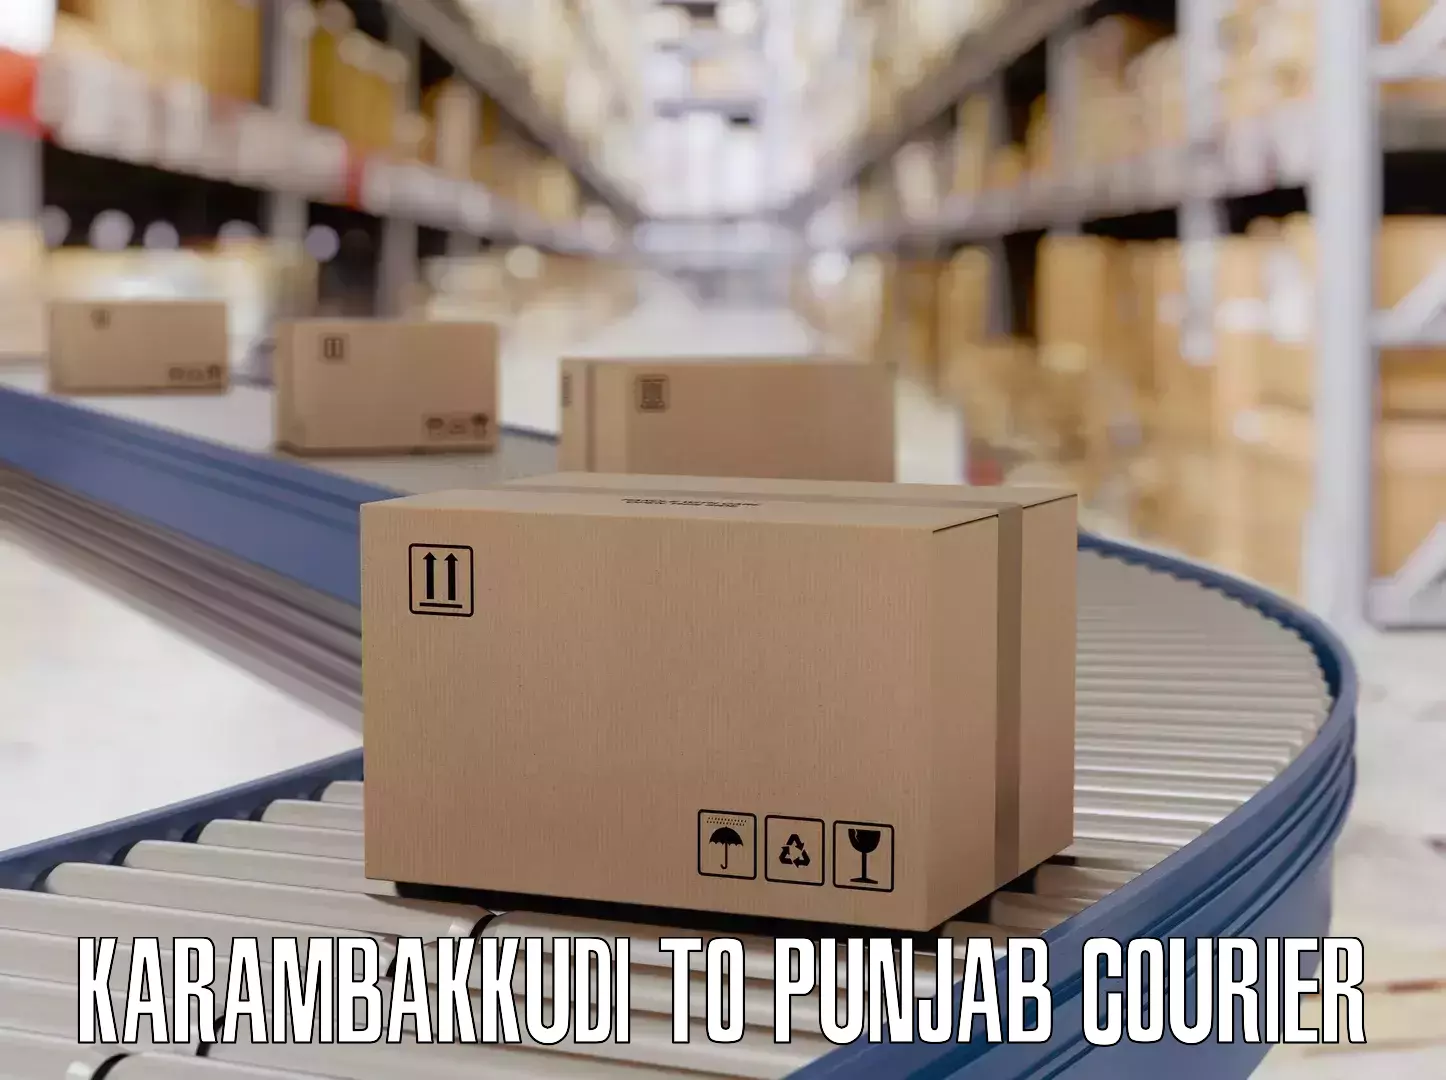 Smart baggage shipping Karambakkudi to Jalandhar